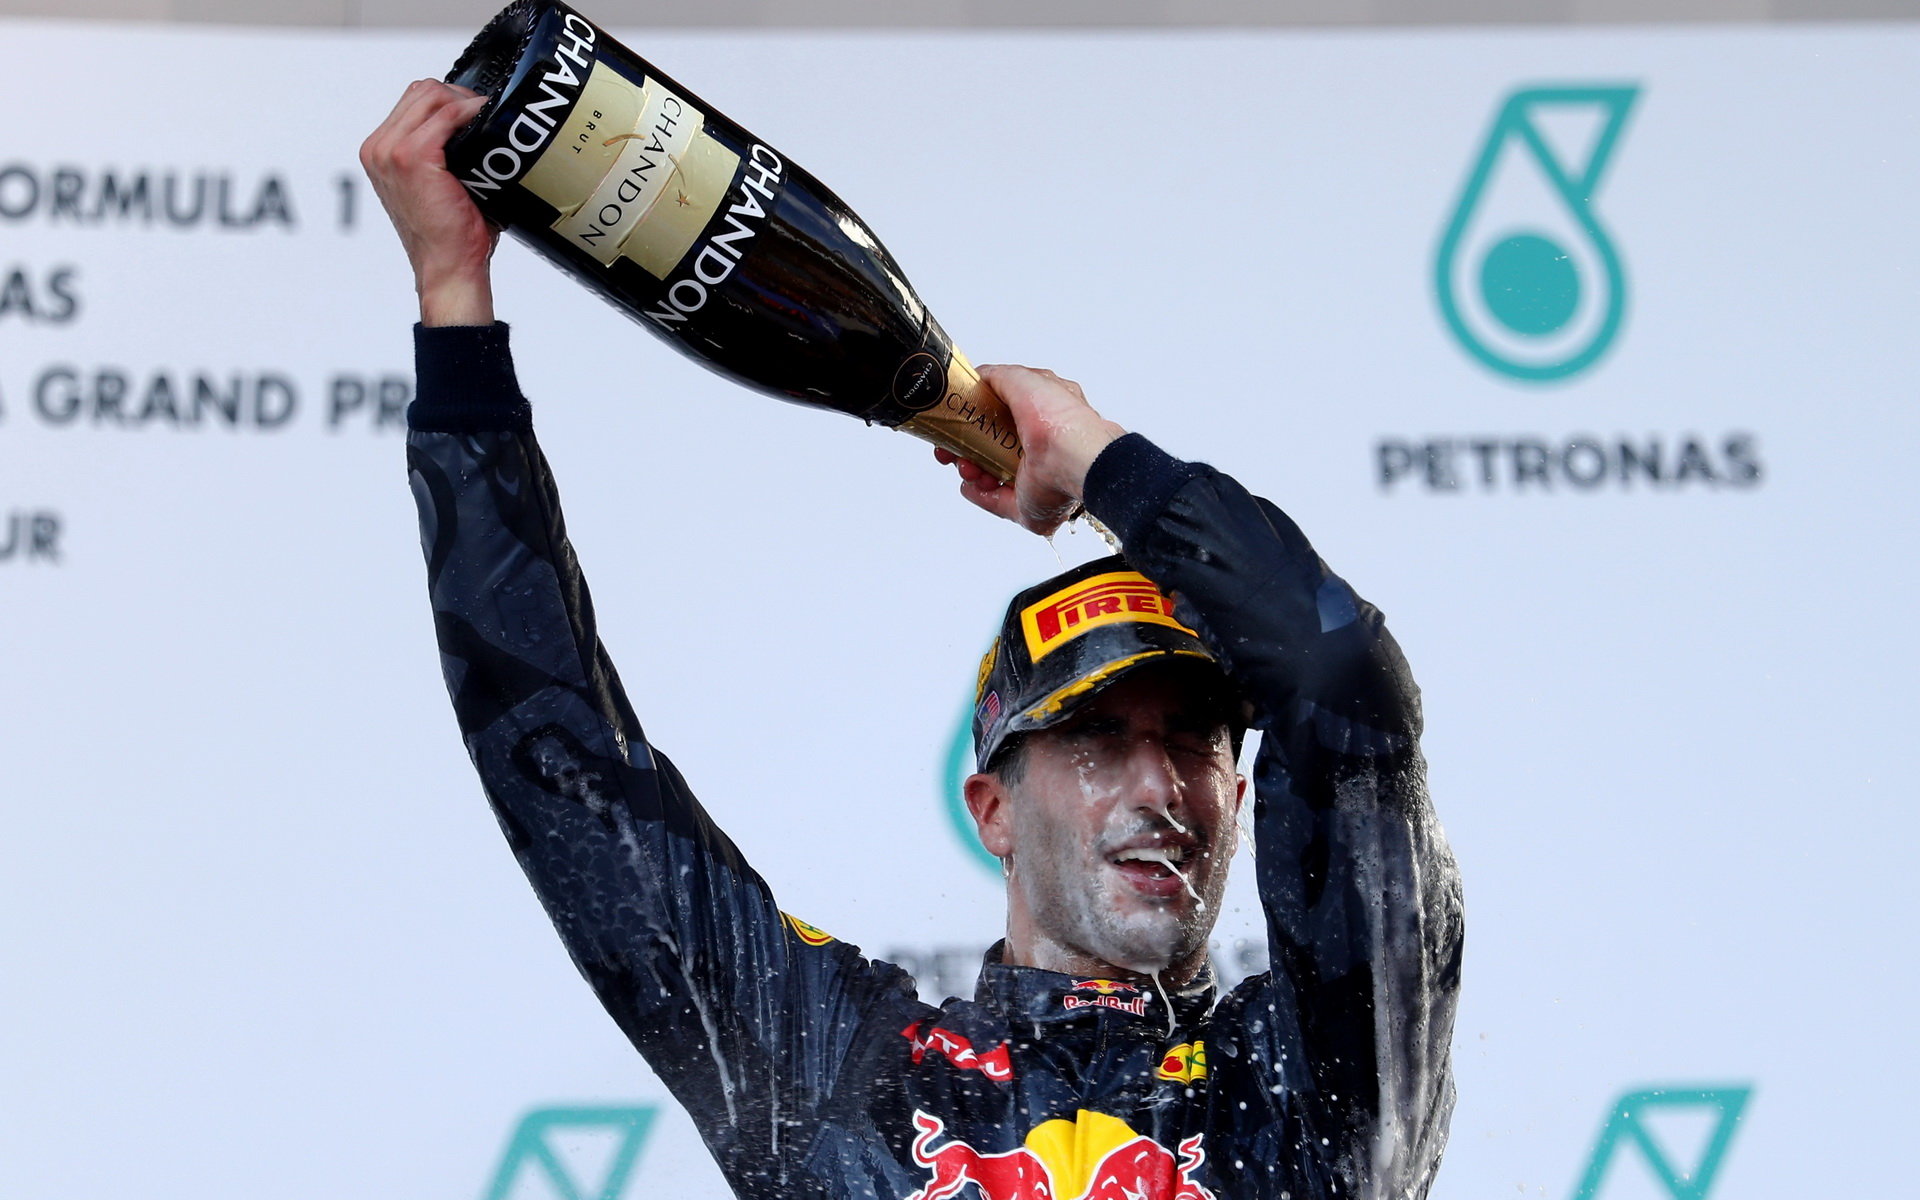 Daniel Ricciardo se raduje z vítězství po závodě v Malajsii